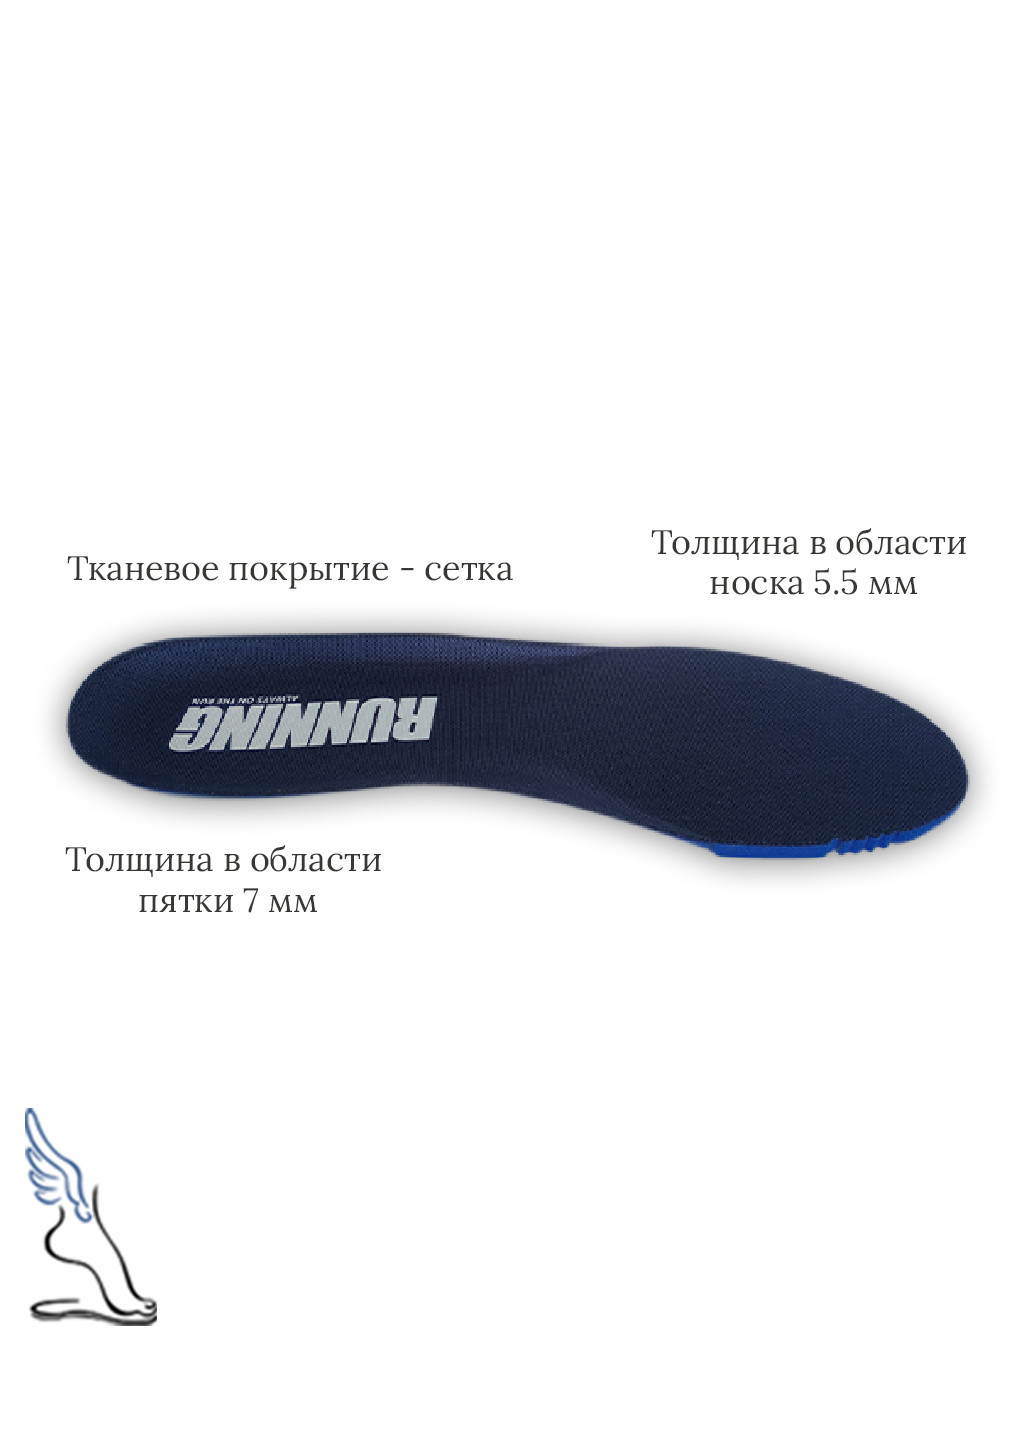 Стельки для спортивной обуви "Running", Ortholite No Brand (253137641)